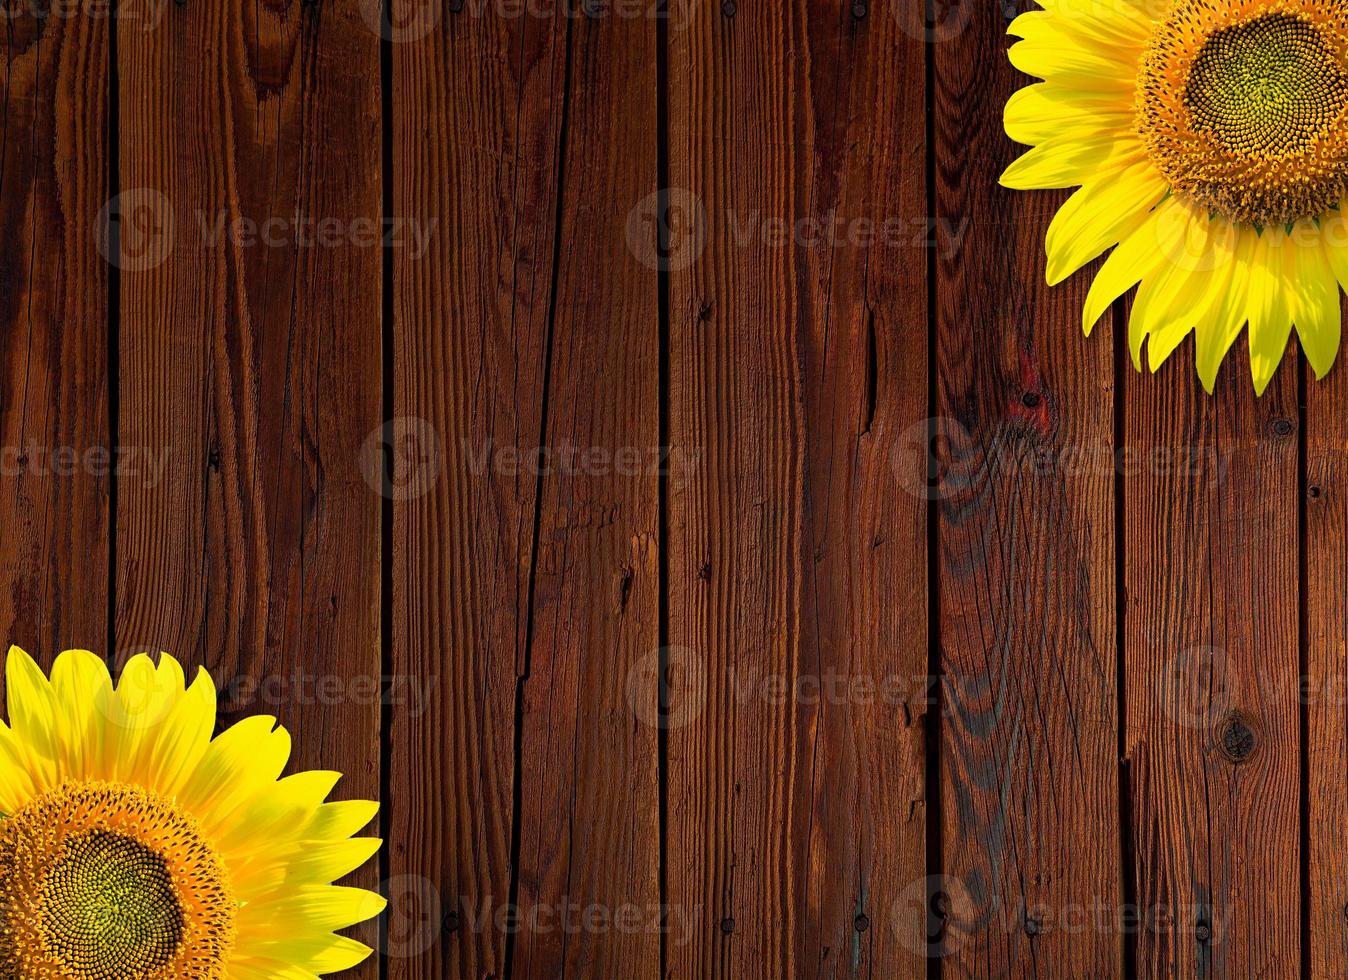 Herbst Hintergrund mit Gelb Sonnenblumen auf hölzern Tafel foto